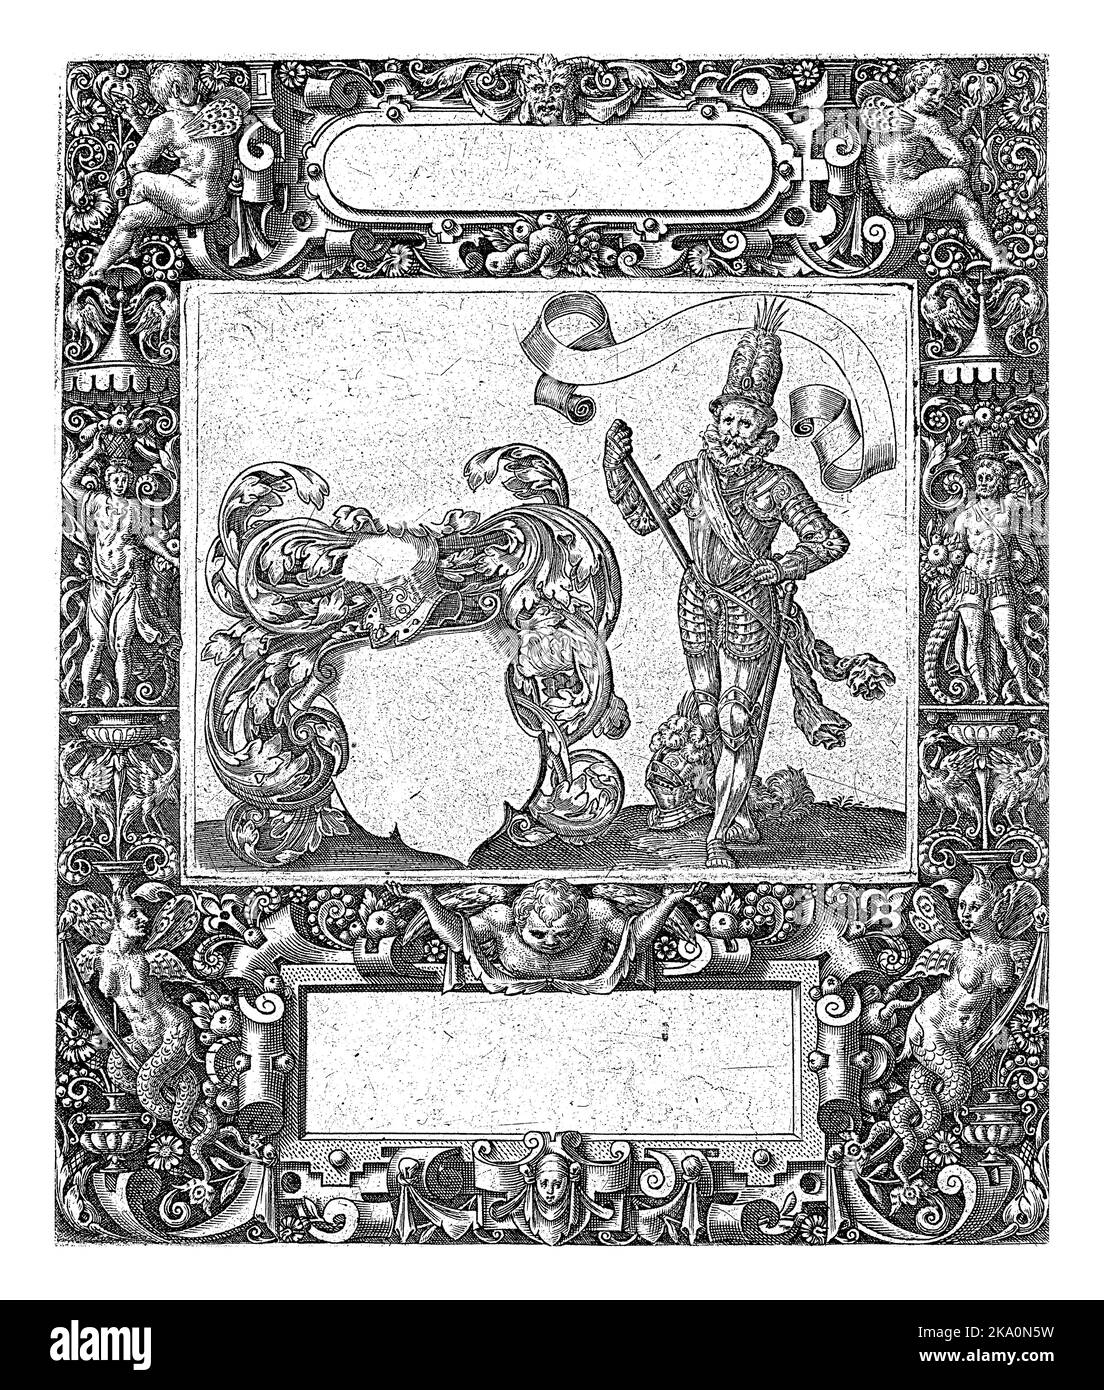 Rahmen mit einer länglichen Kartusche mit abgerundeten Seiten in der Mitte oben, Theodor de Bry, 1593 in der Mitte unten ist eine rechteckige Kartusche. Es ist ja so Stockfoto